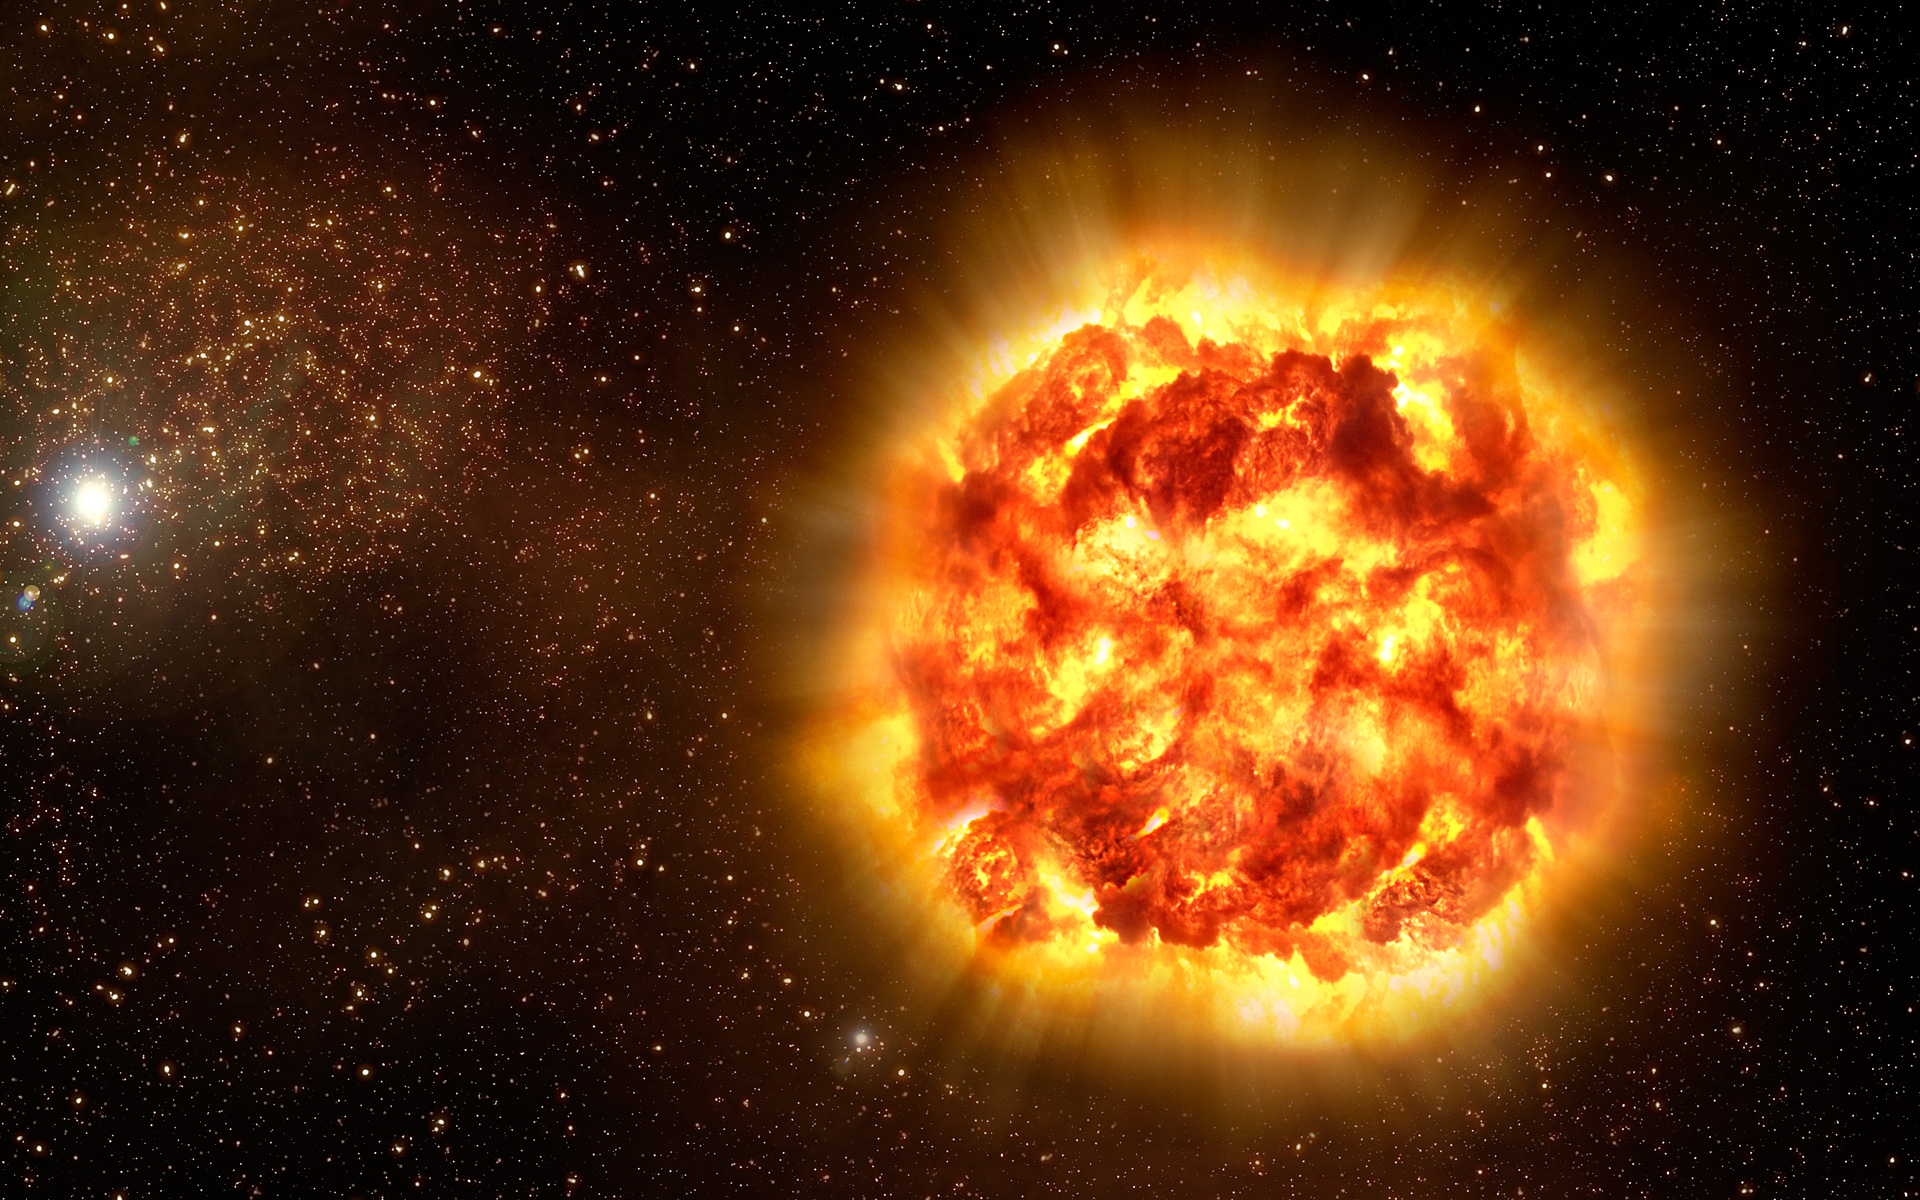 Dans l'étoile massive chaude, des paires de particules de matière se serait créées, provoquant une brusque diminution de la pression interne de l'étoile Crédit : Nasa